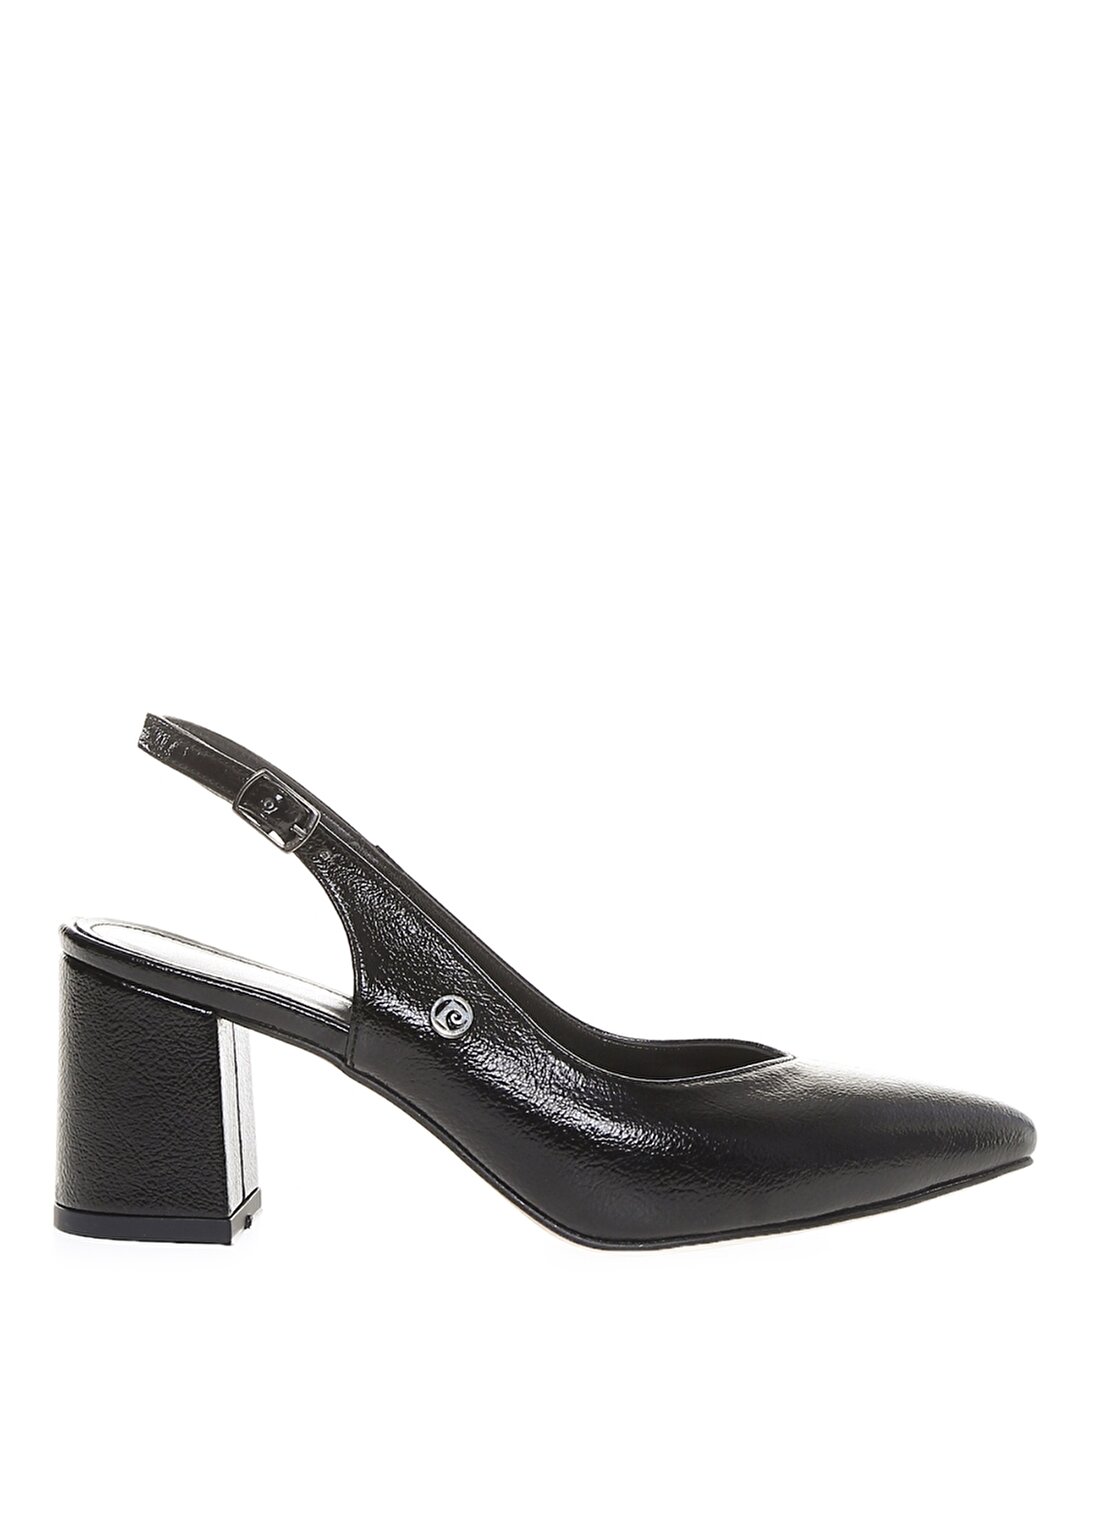 Pierre Cardin Kadın Siyah Topuklu Ayakkabı PC-50173